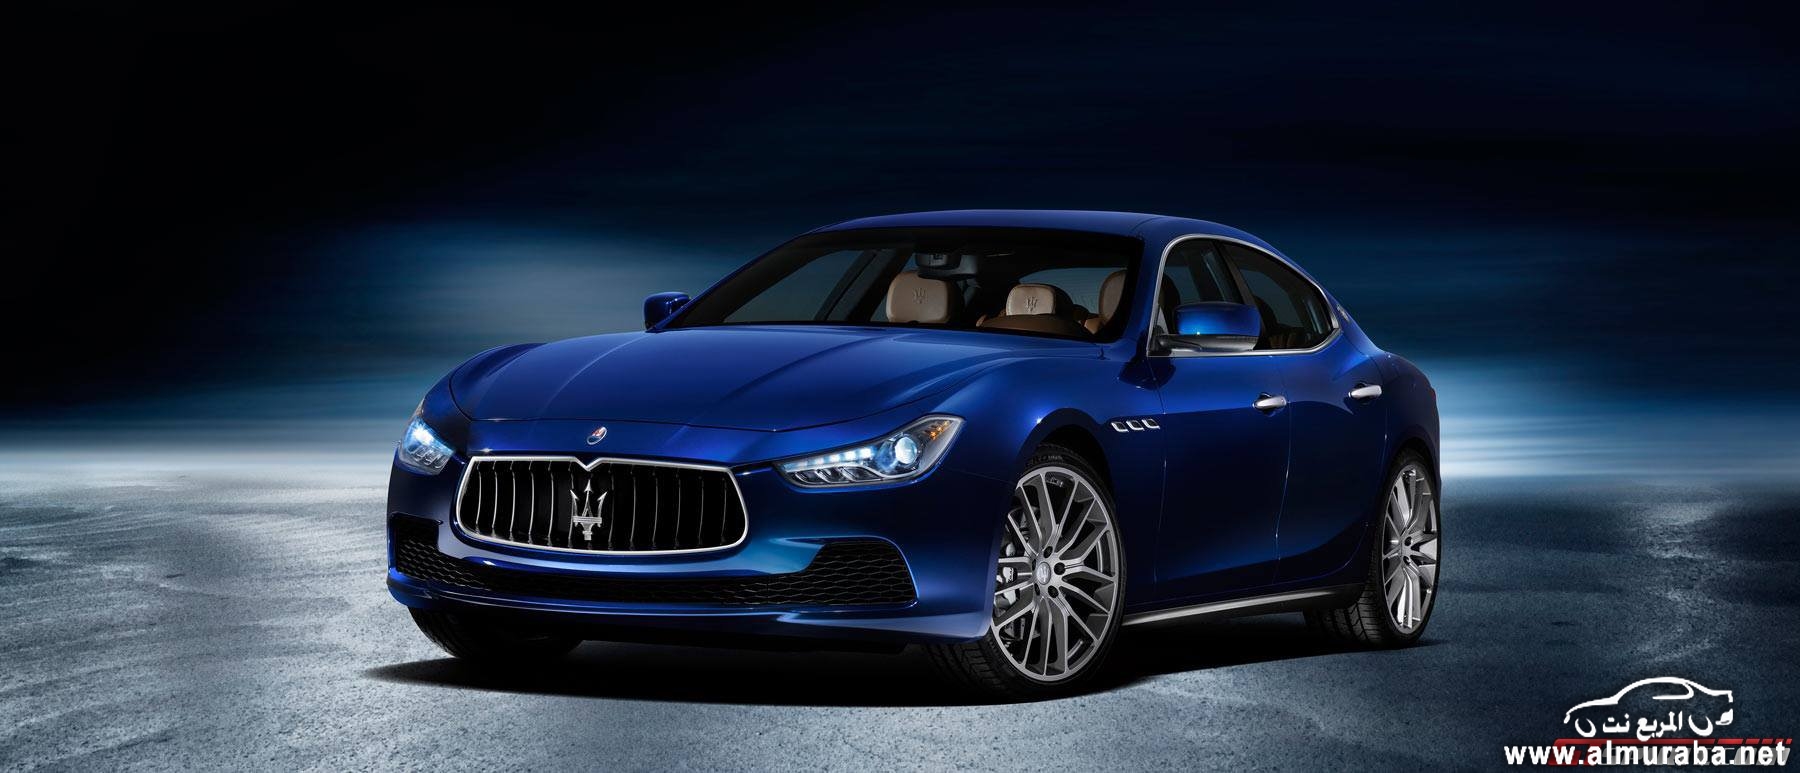 نسخة جديدة من مازيراتي جيبلي باللون الازرق القاتم Maserati Ghibli Blu 1